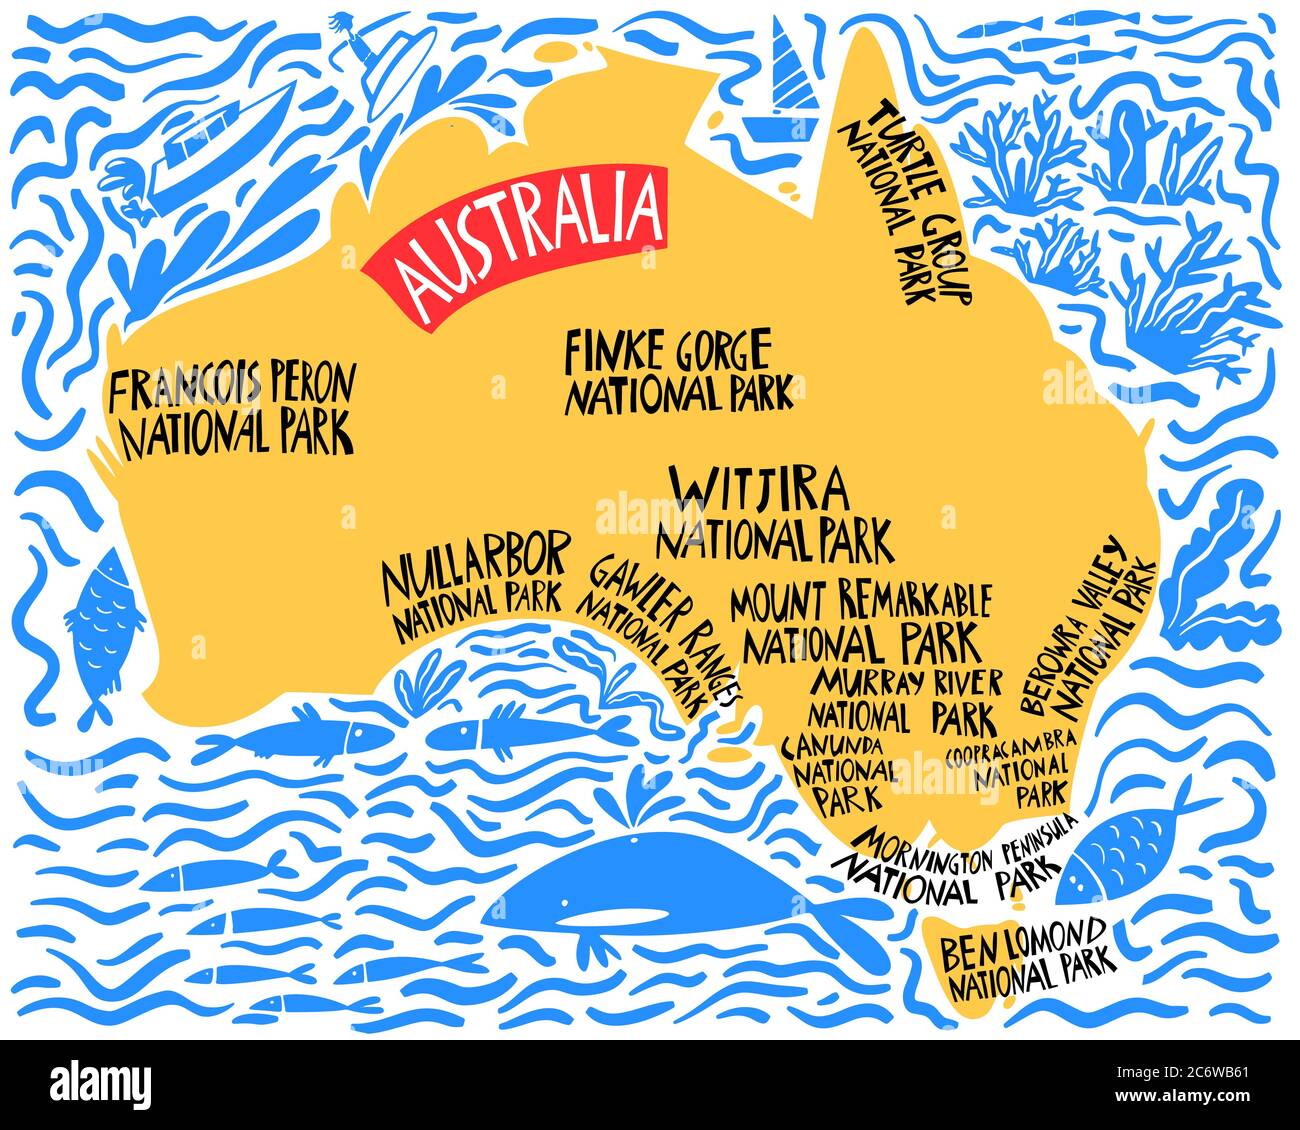 Carte stylisée vectorielle dessinée à la main de l'Australie. Illustration de voyage des parcs nationaux du Commonwealth d'Australie. Illustration avec lettrage dessiné à la main. Sout Illustration de Vecteur